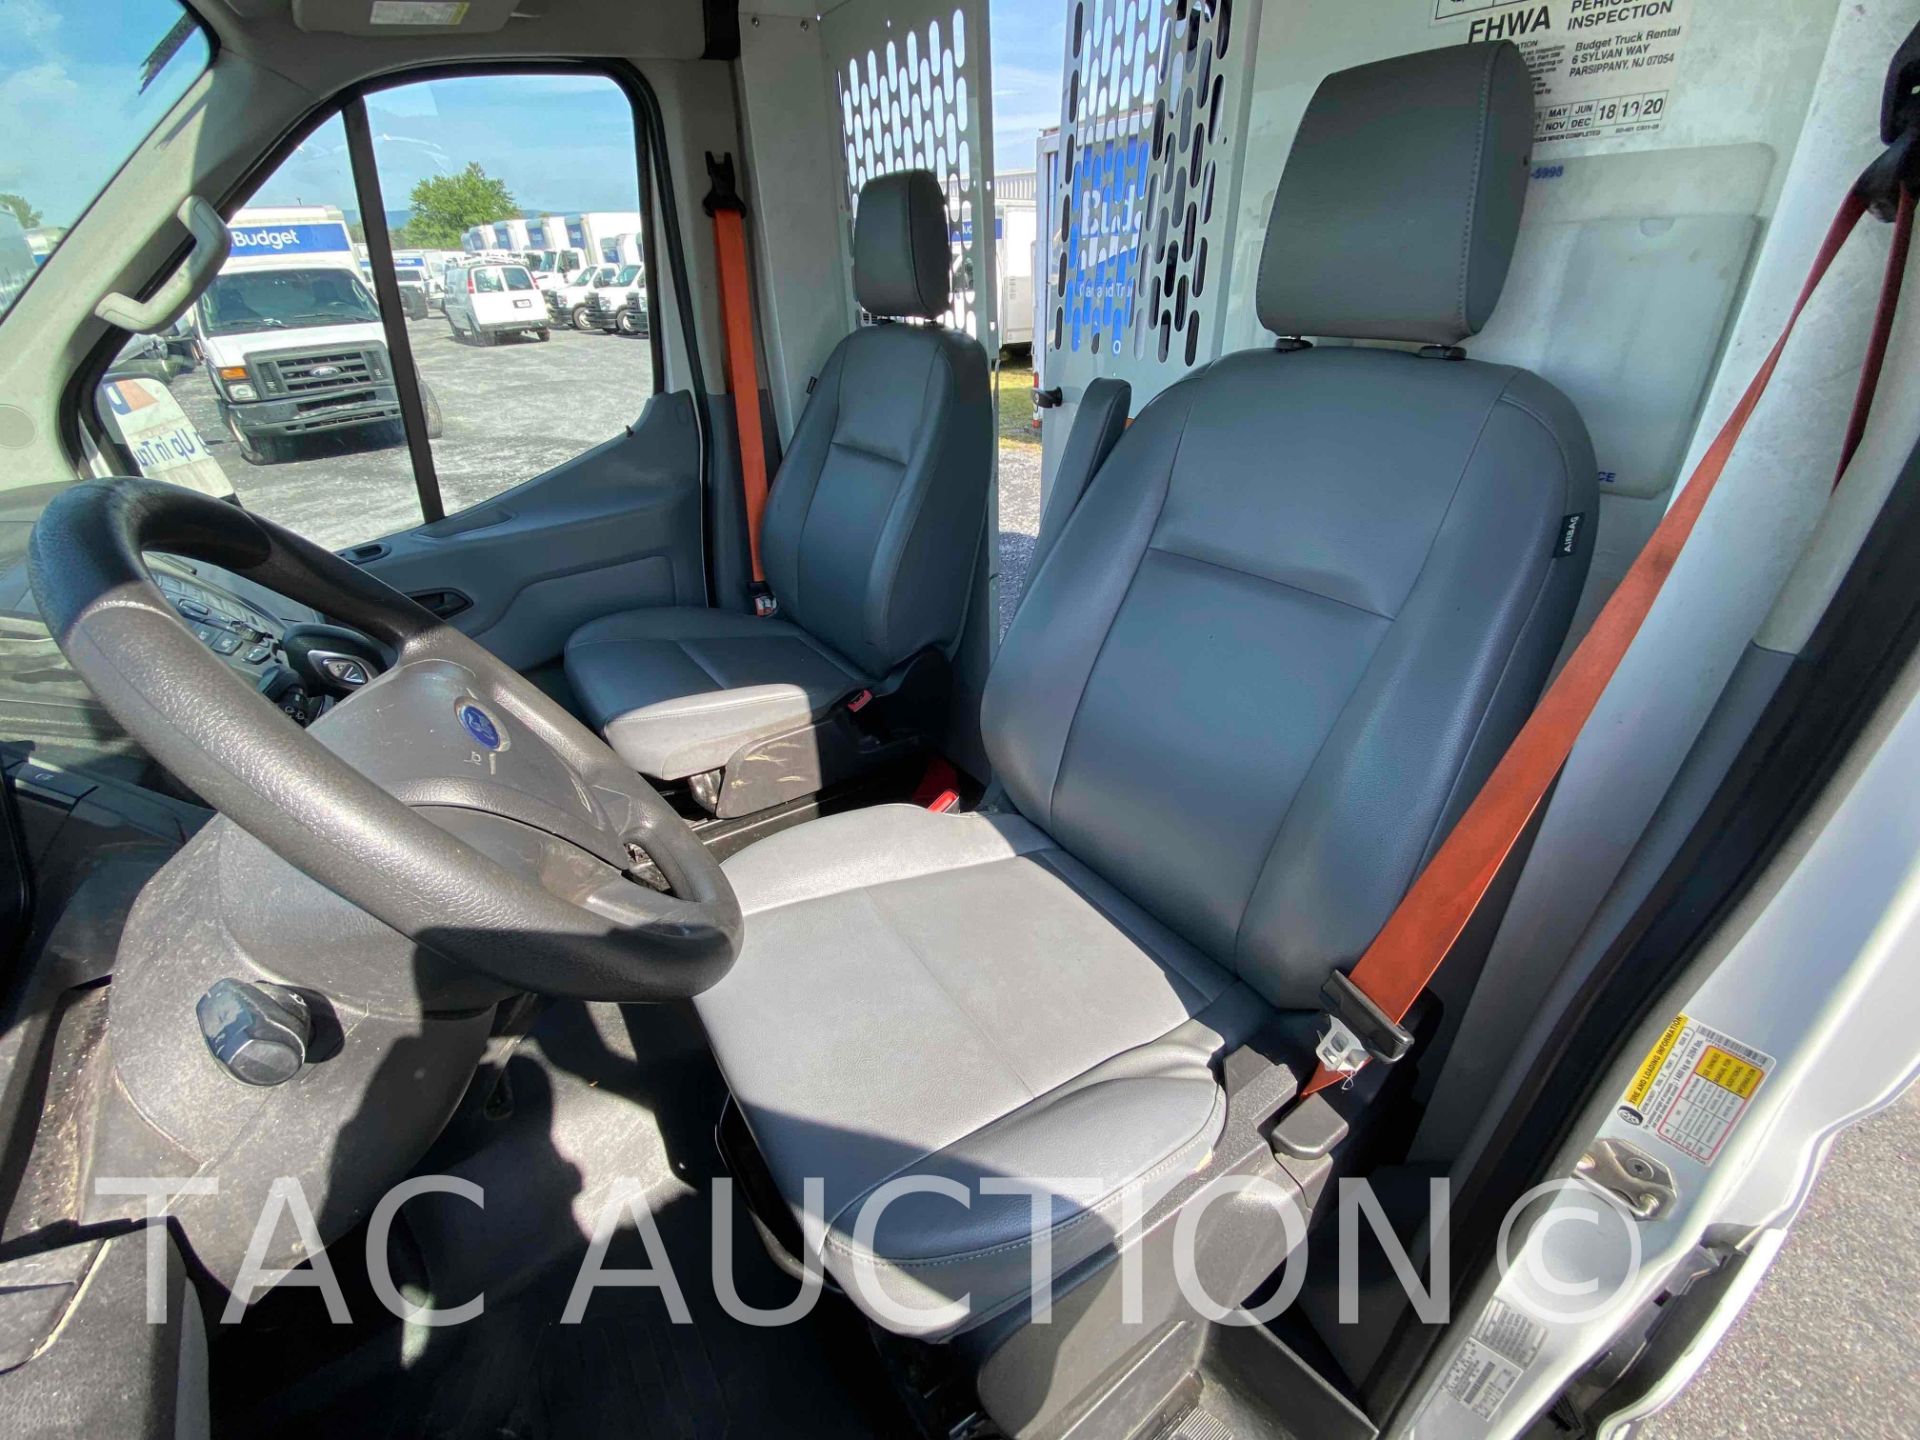 2019 Ford Transit 150 Cargo Van - Image 24 of 51